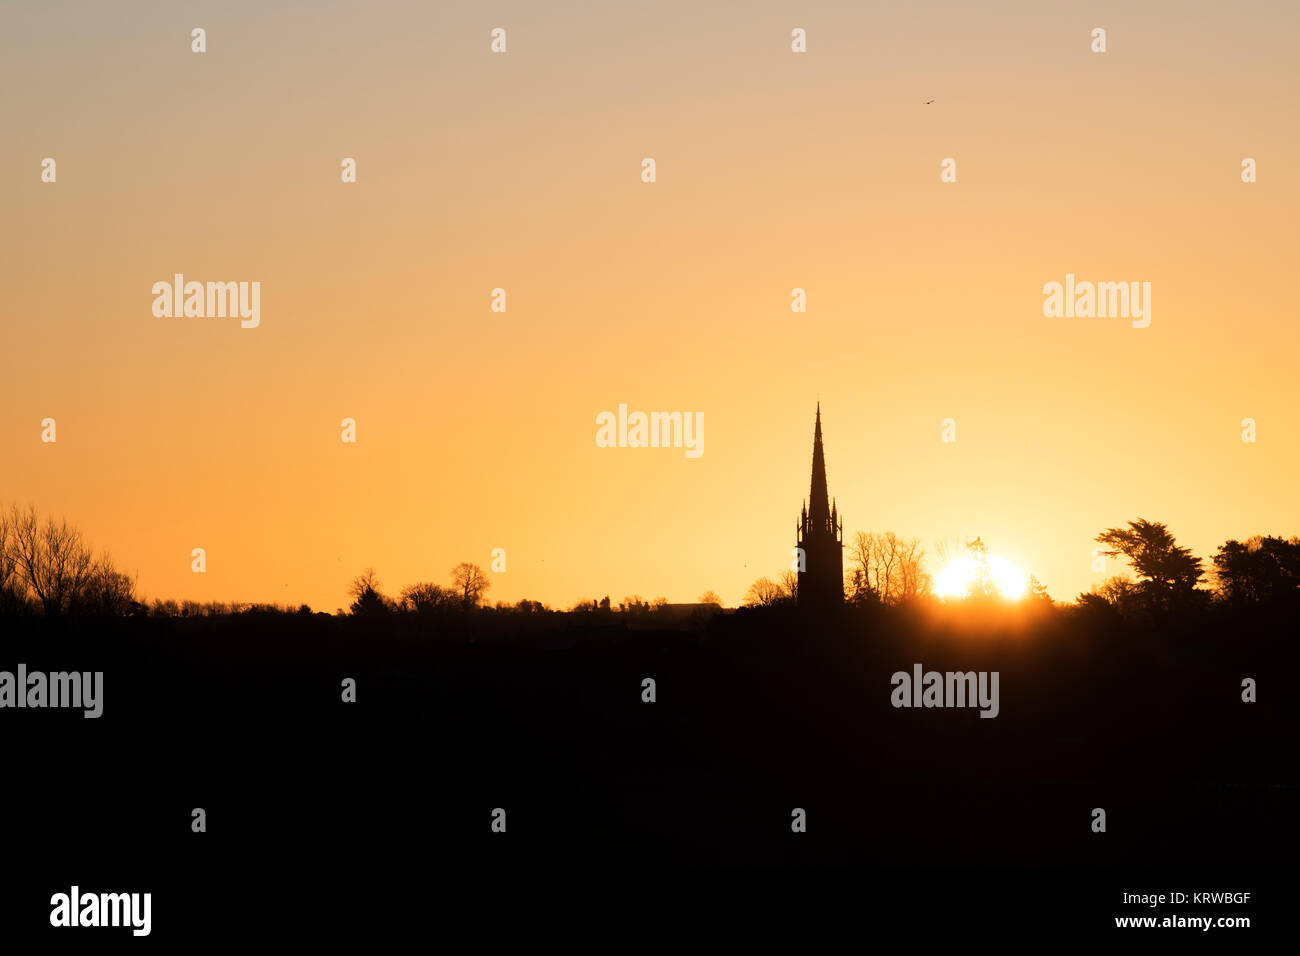 Lever du soleil derrière un clocher d'église en décembre. Rois Sutton, Nr Banbury, Northamptonshire, en Angleterre. Silhouette Banque D'Images